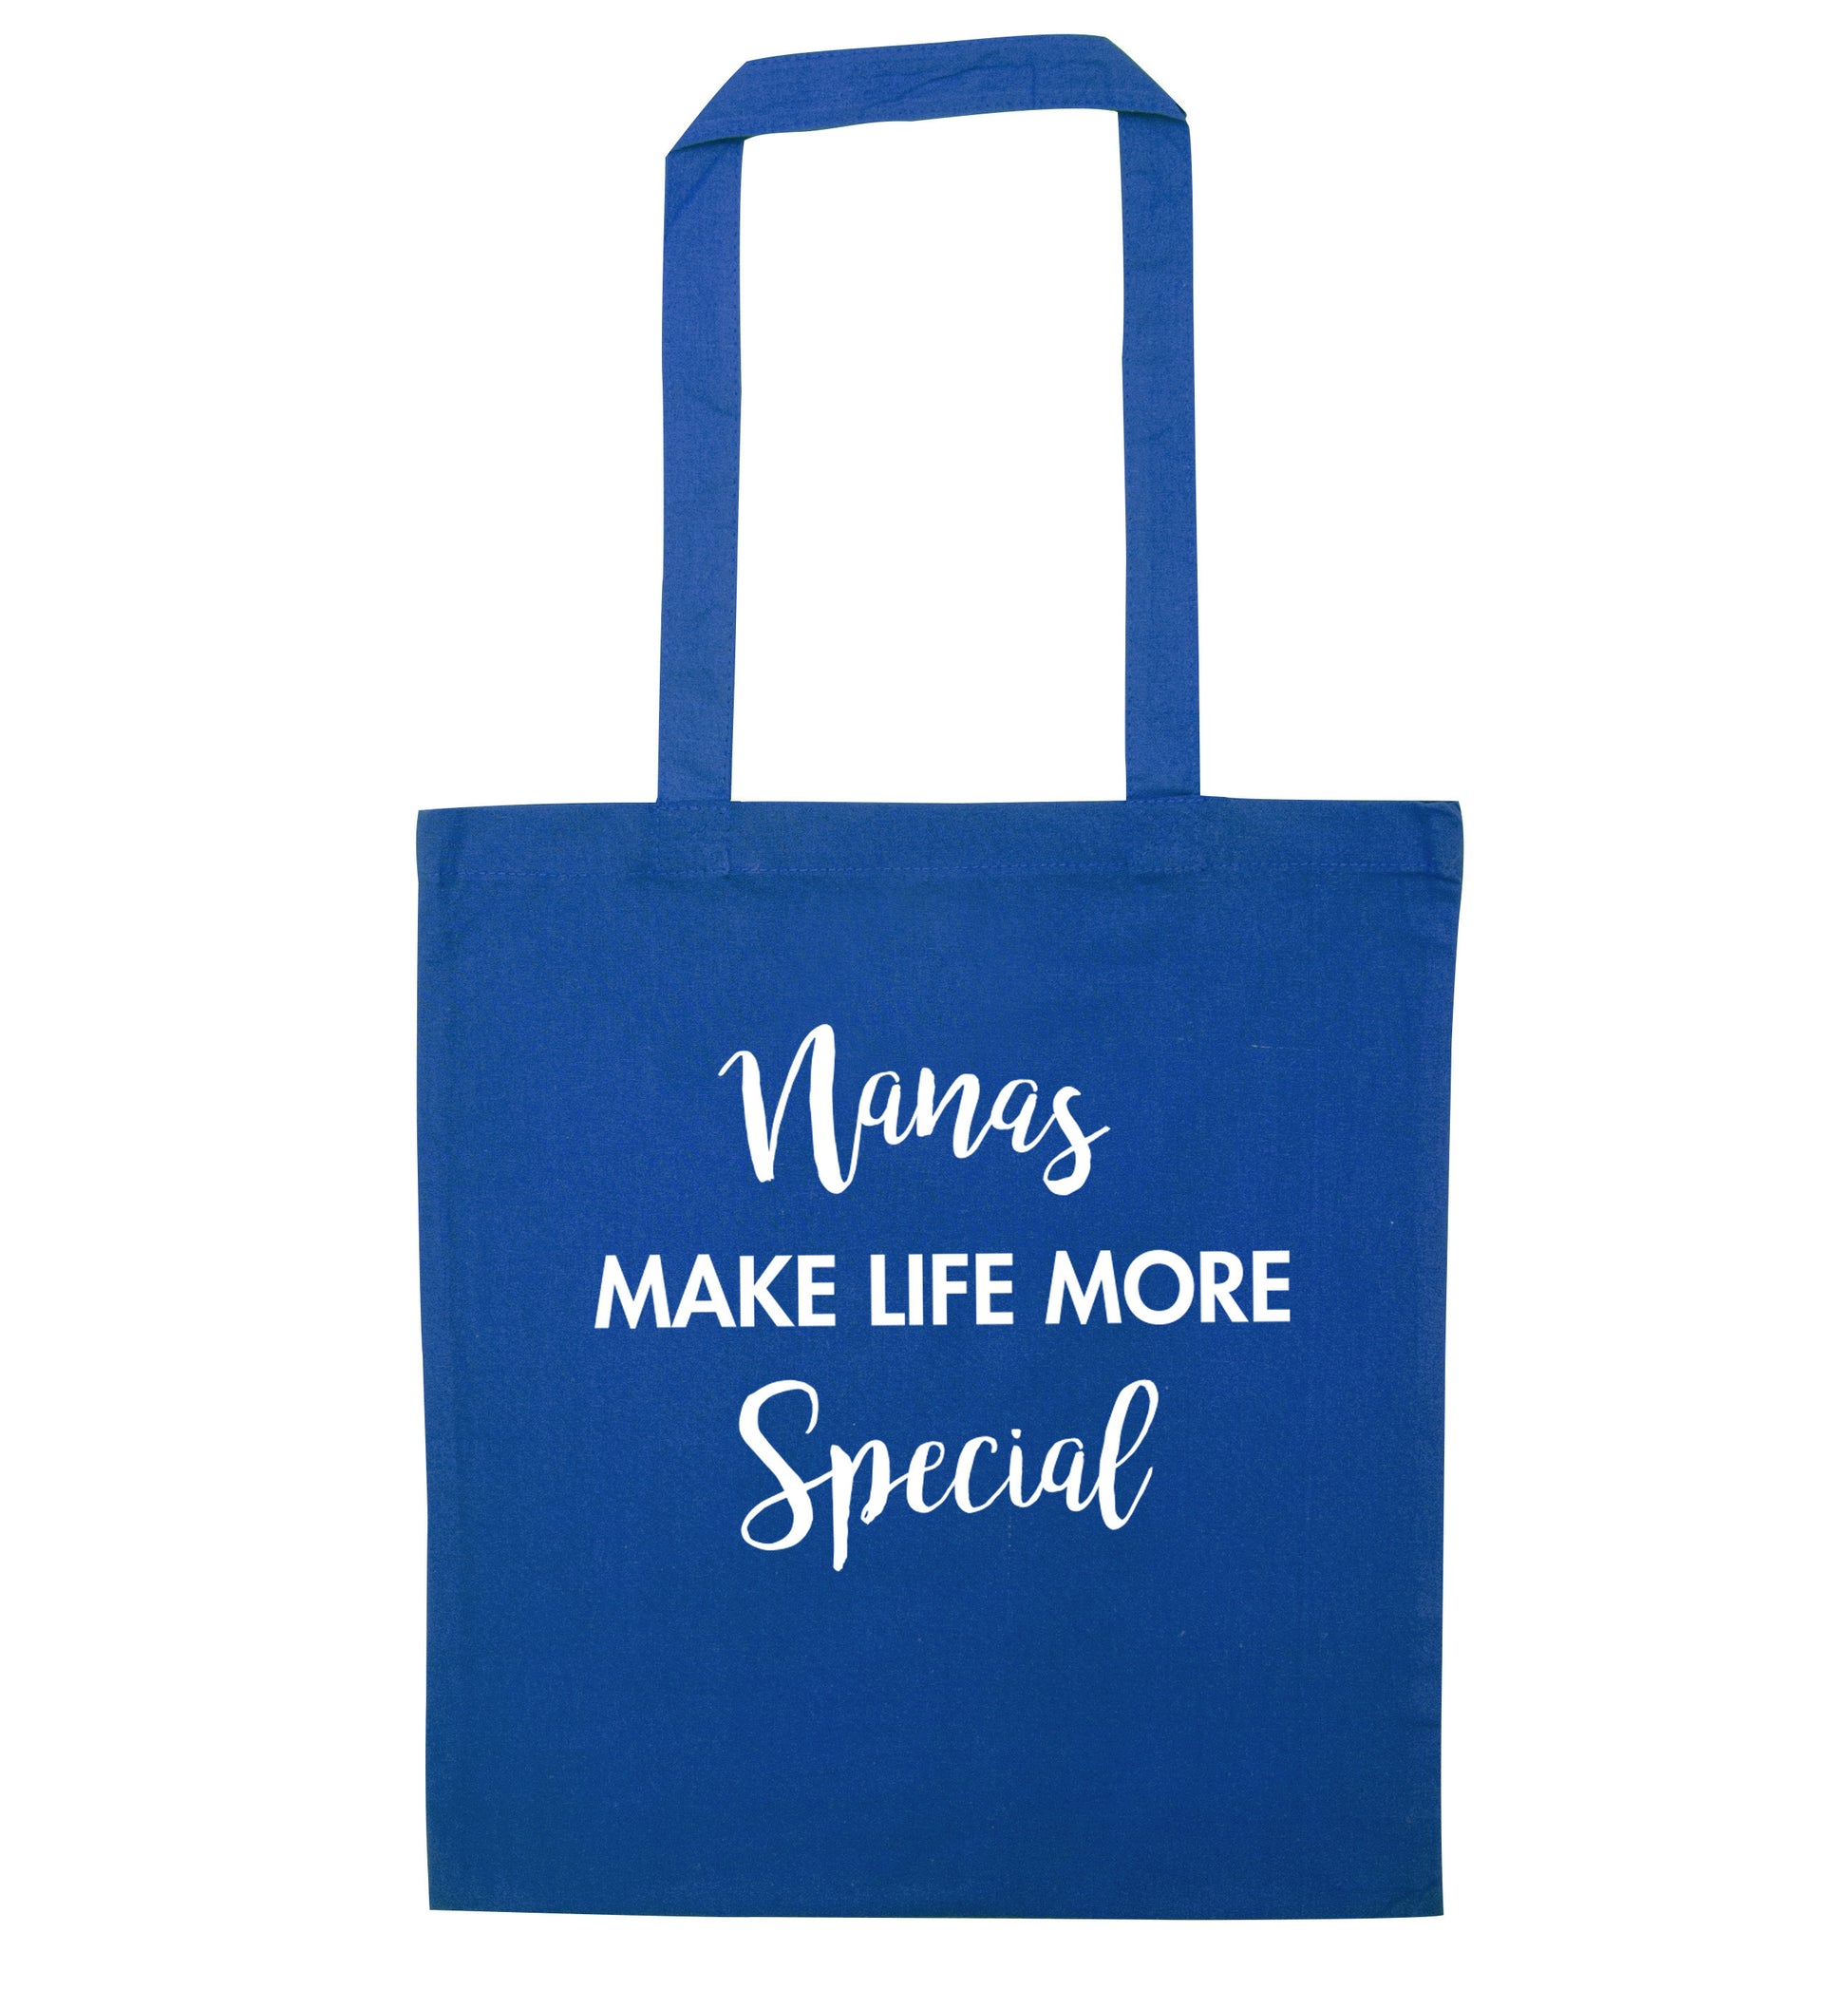 Nanas make life more special blue tote bag